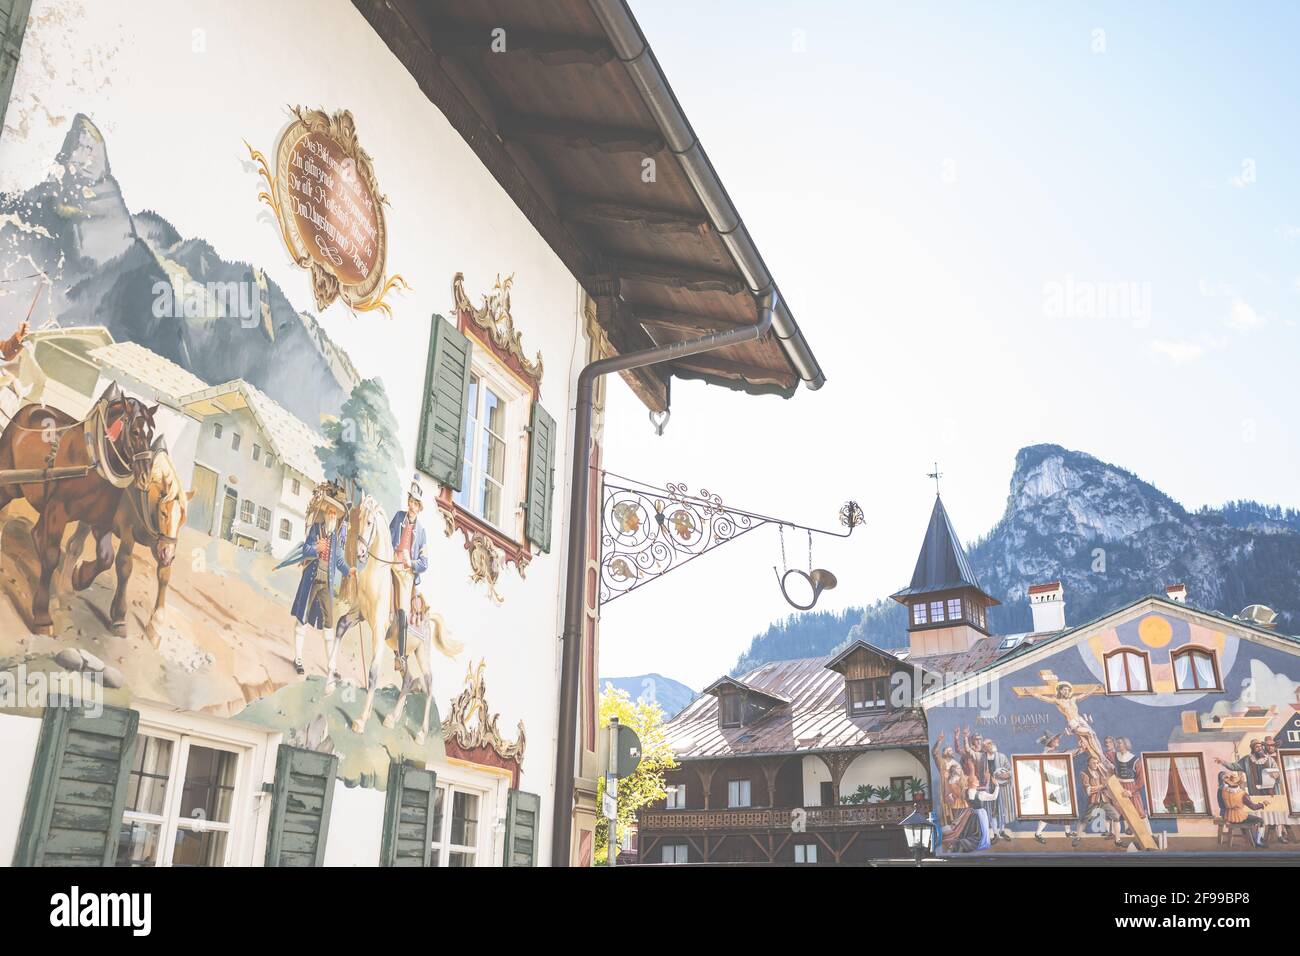 Dorfansichten - Wandmalerei, Fächermalerei oder Fassadenmalerei auf Bauernhäusern in Oberammergau - Dorf unter dem Kofel Stockfoto